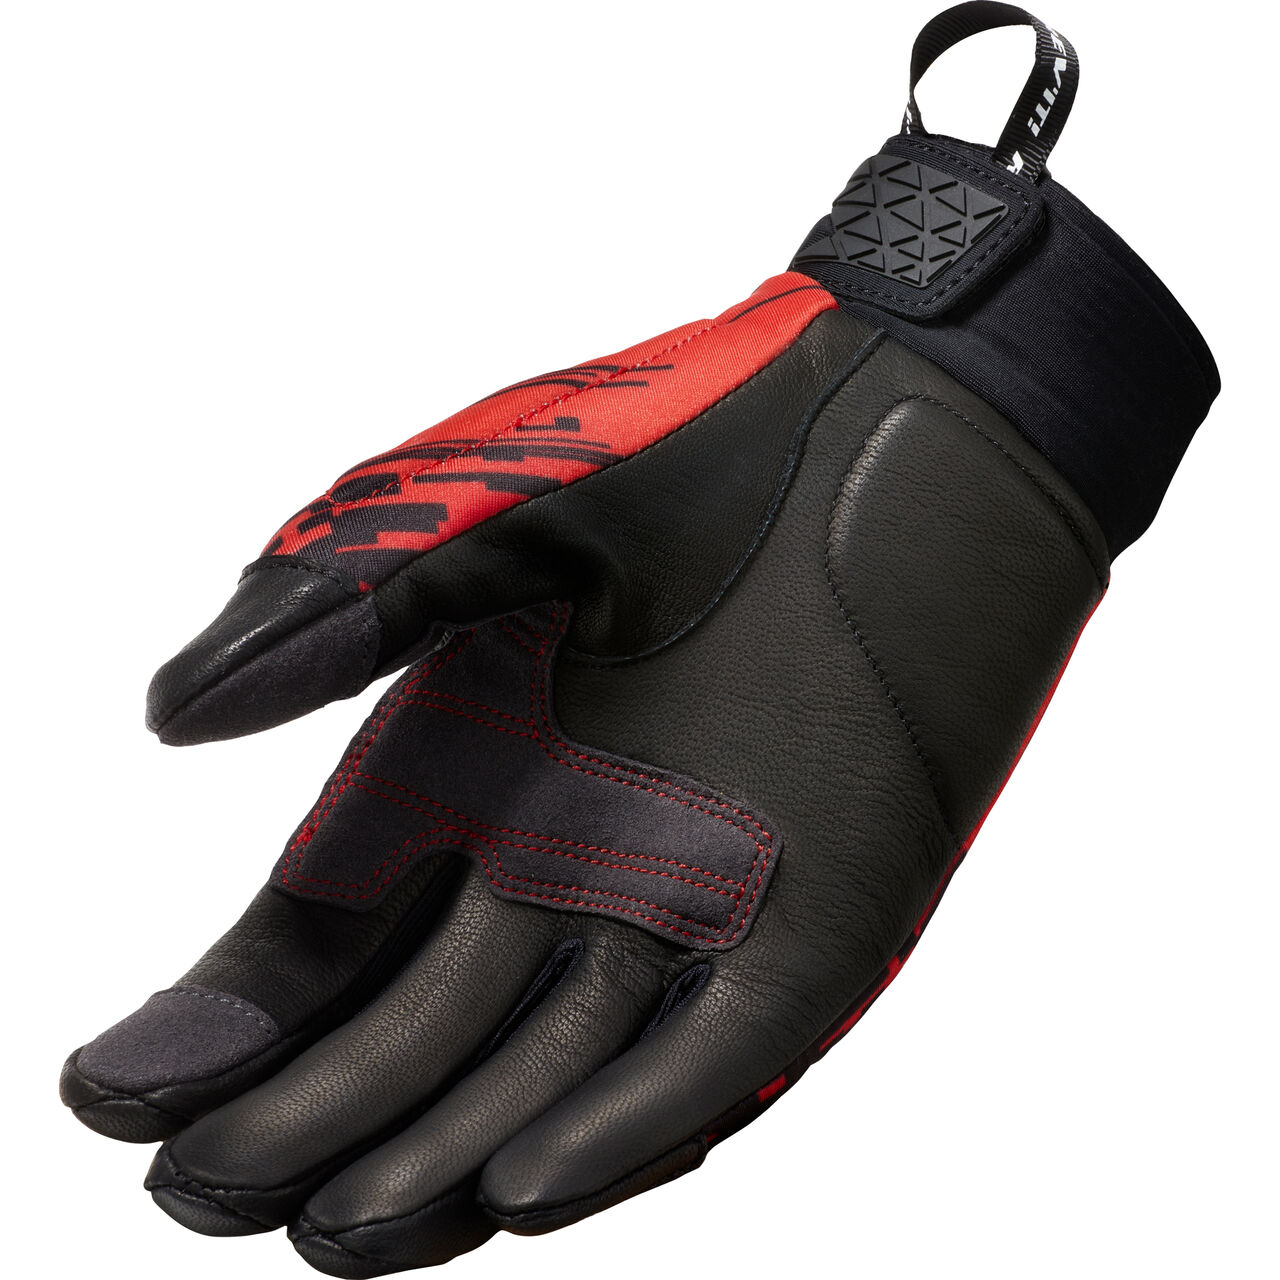 Spectrum Glove black/fluo red